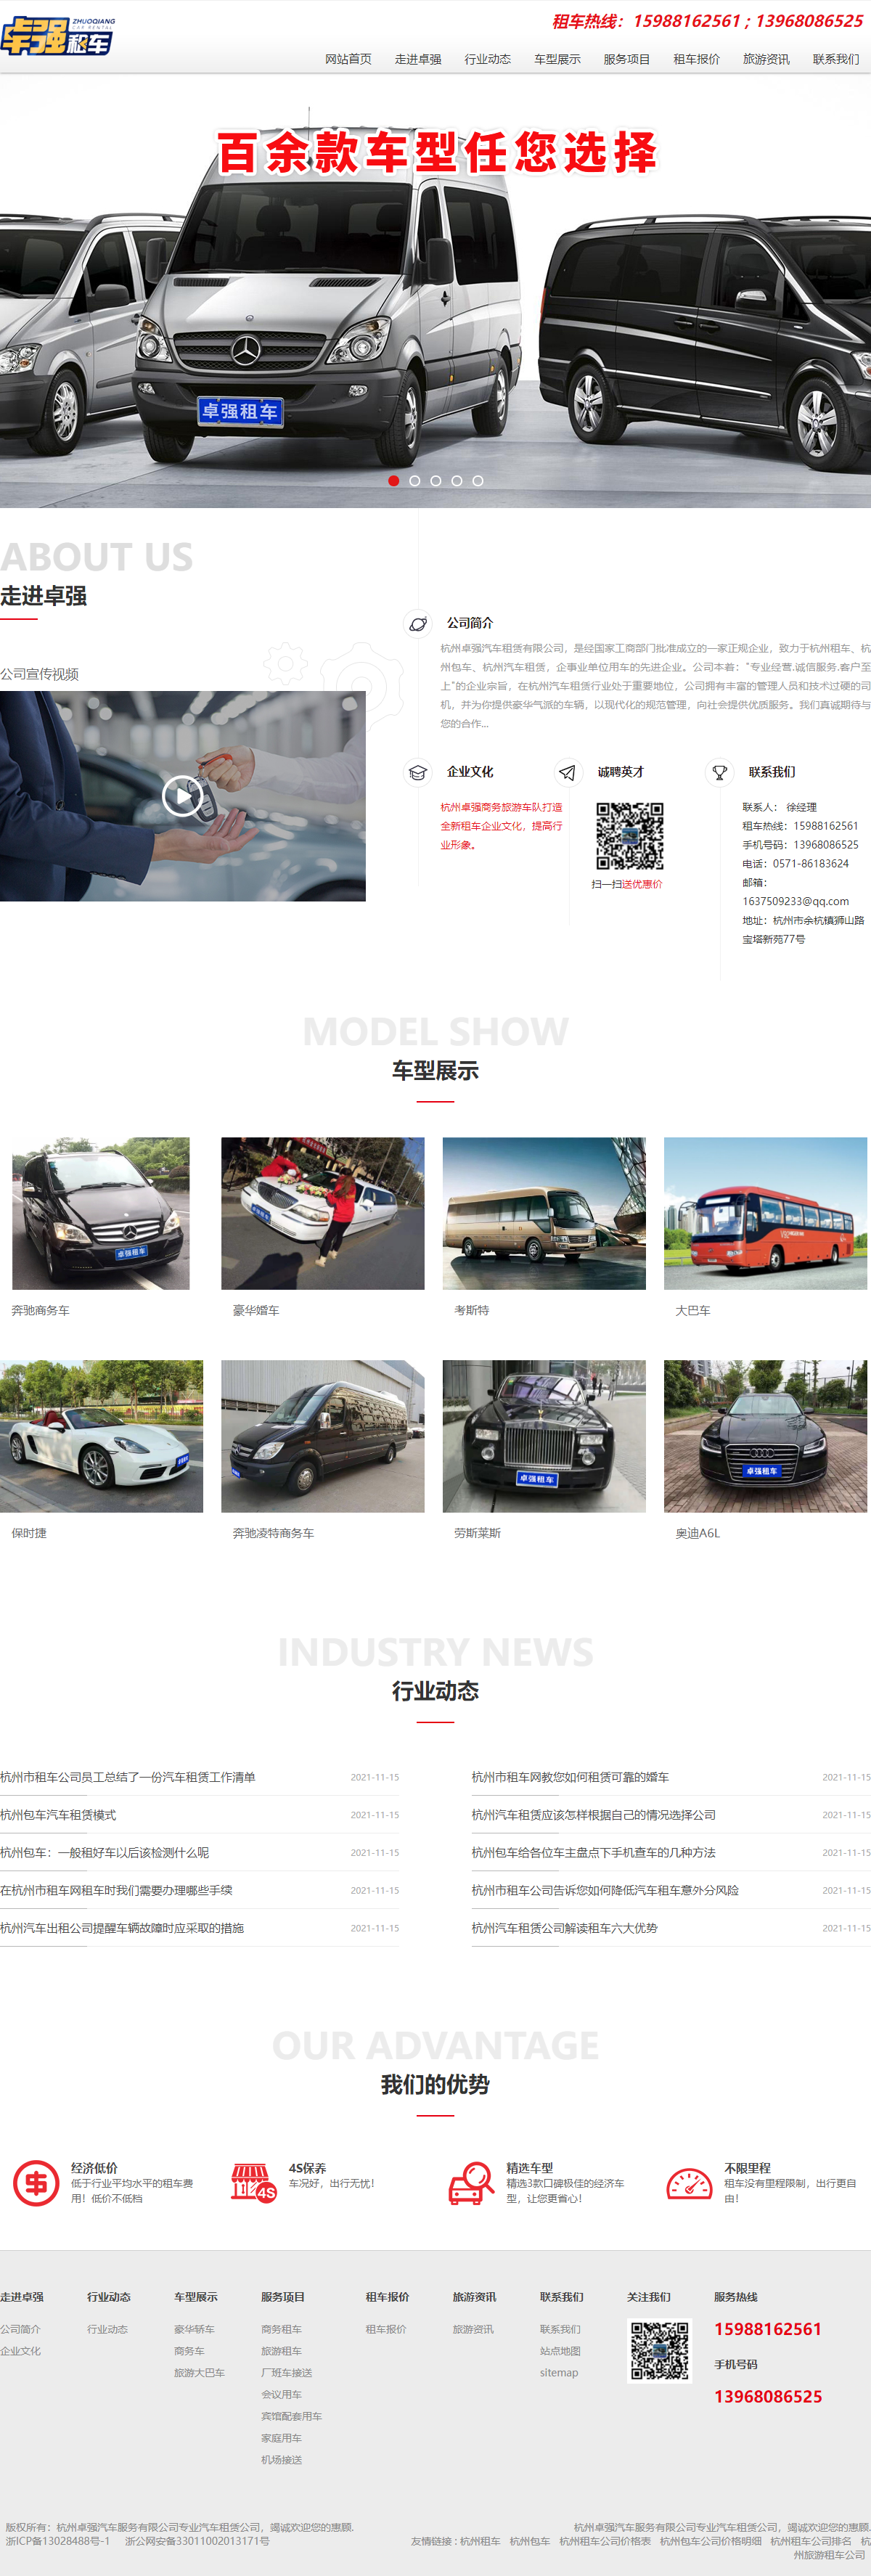 杭州卓强汽车服务有限公司网站案例